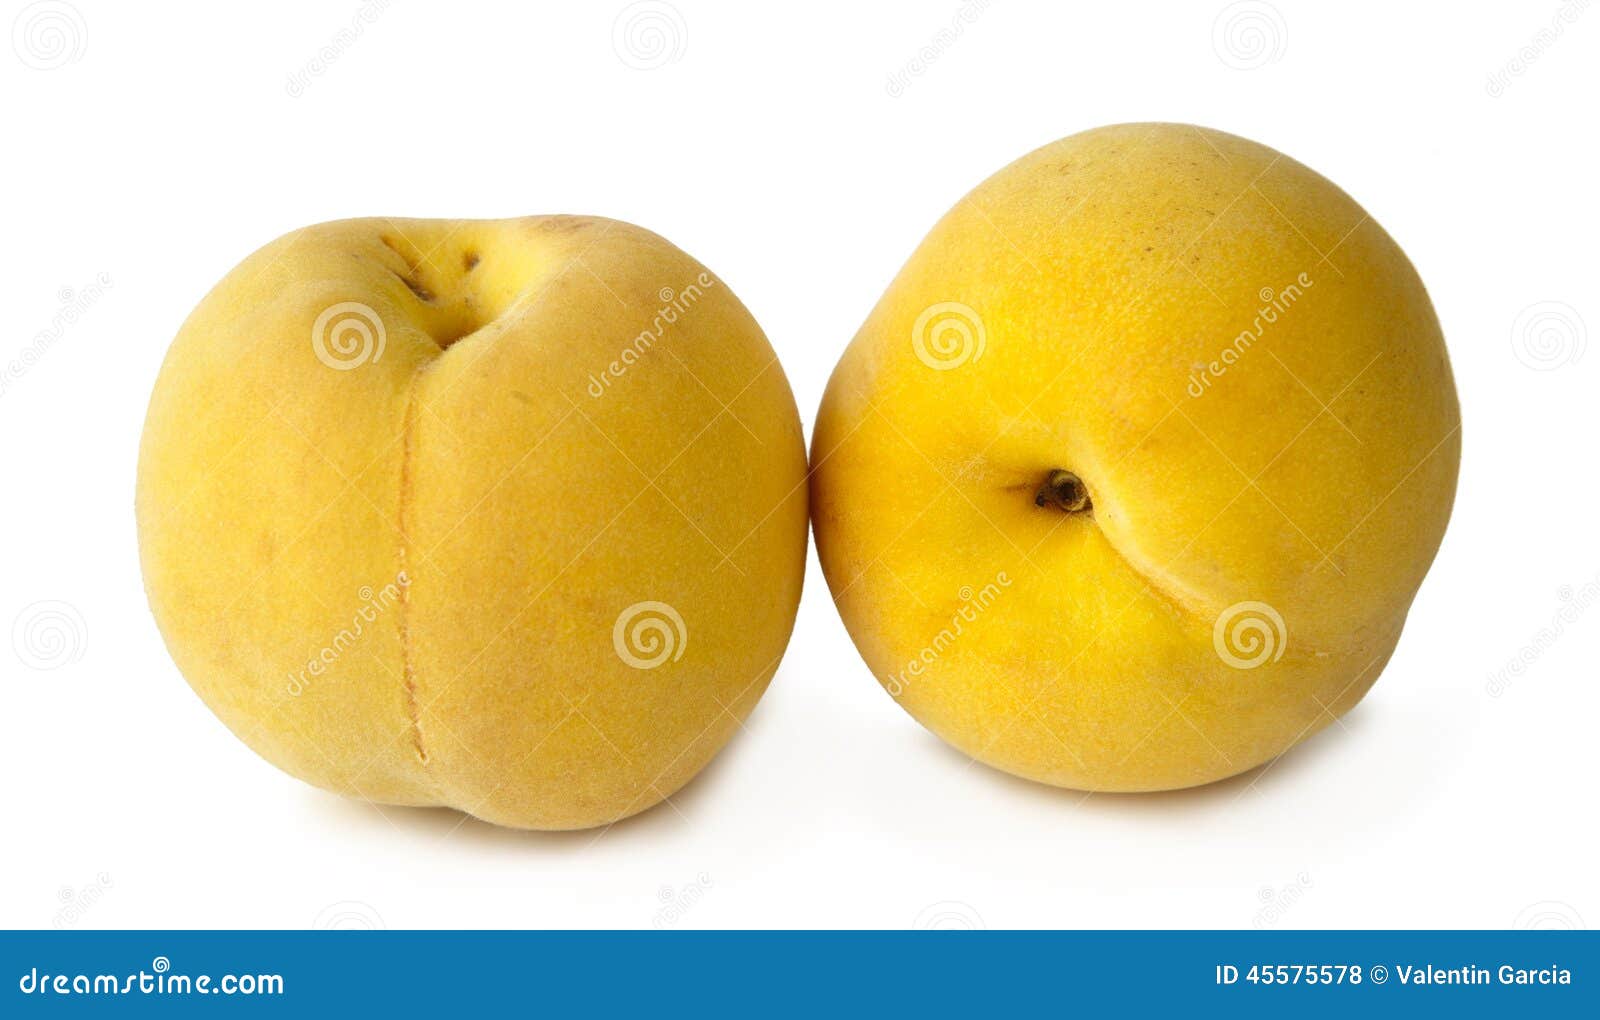 yellow peaches on white background